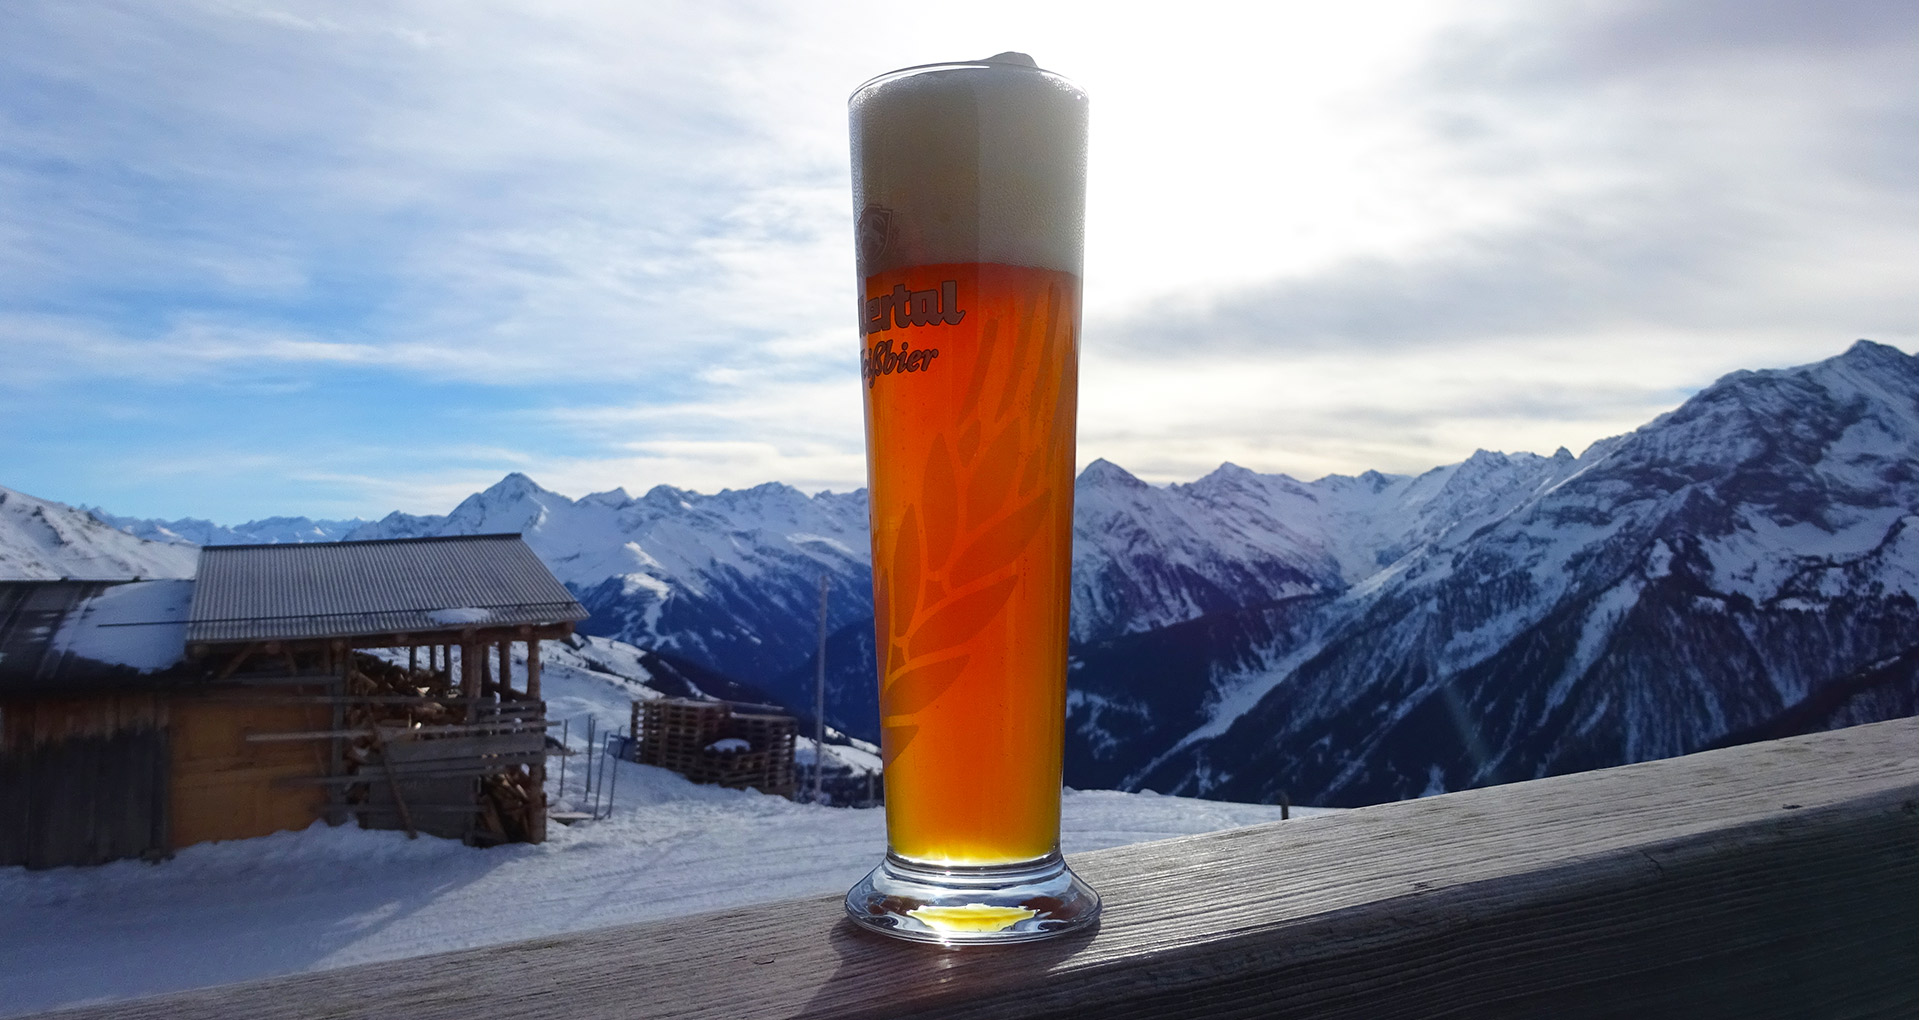 Geniet van een biertje in de zon tijdens de après-ski in Oostenrijk